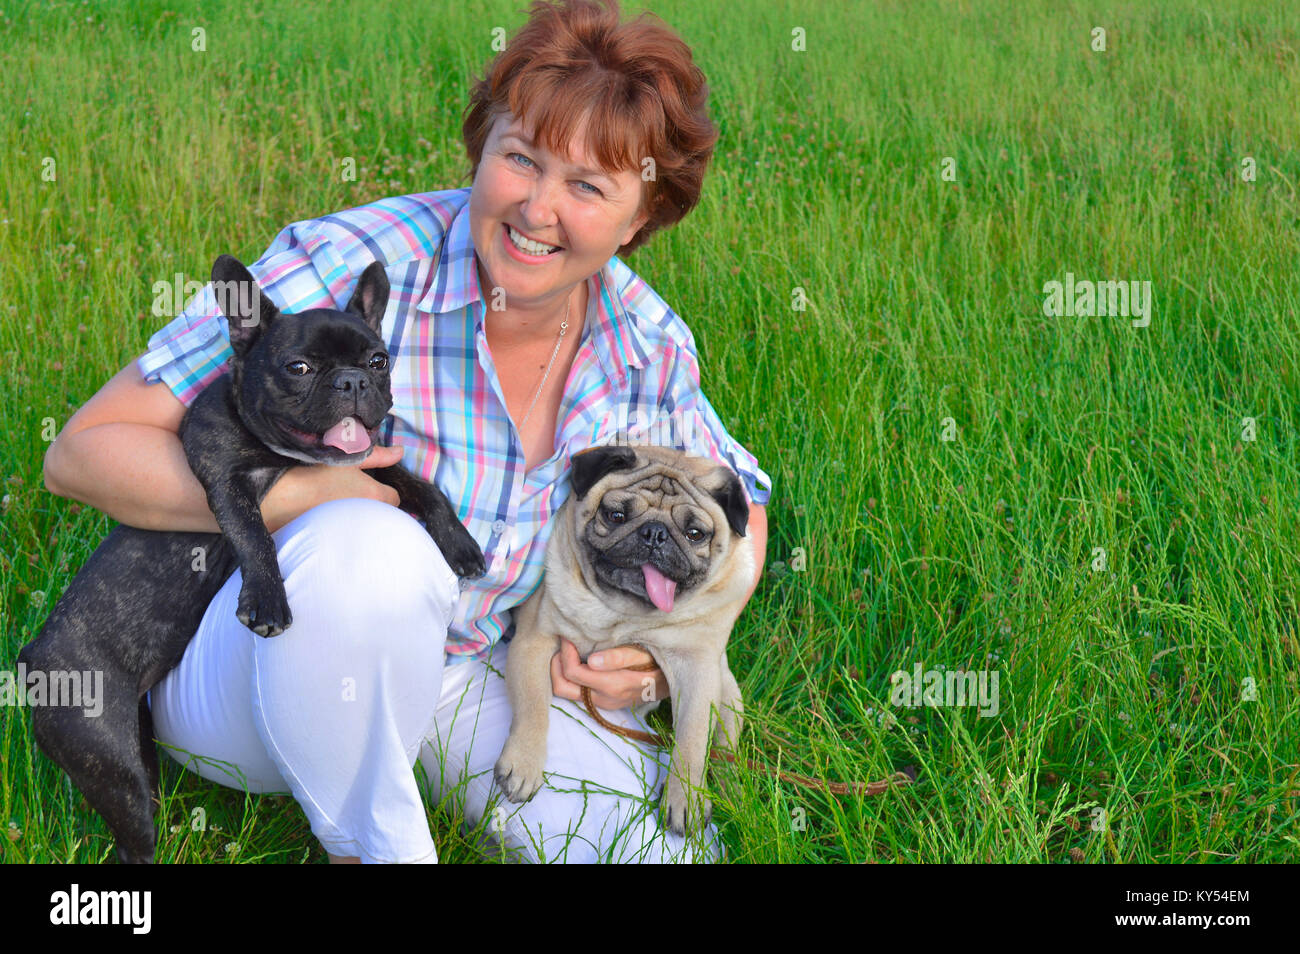 Fröhliche Frau, Mutter, Hausfrau, halten zwei Haustiere, Hunde. Schwarz, aktiv, neugierig Französische Bulldogge, beige, Rehbraun, dicke Mops. ältere Frau schaut zu. Stockfoto